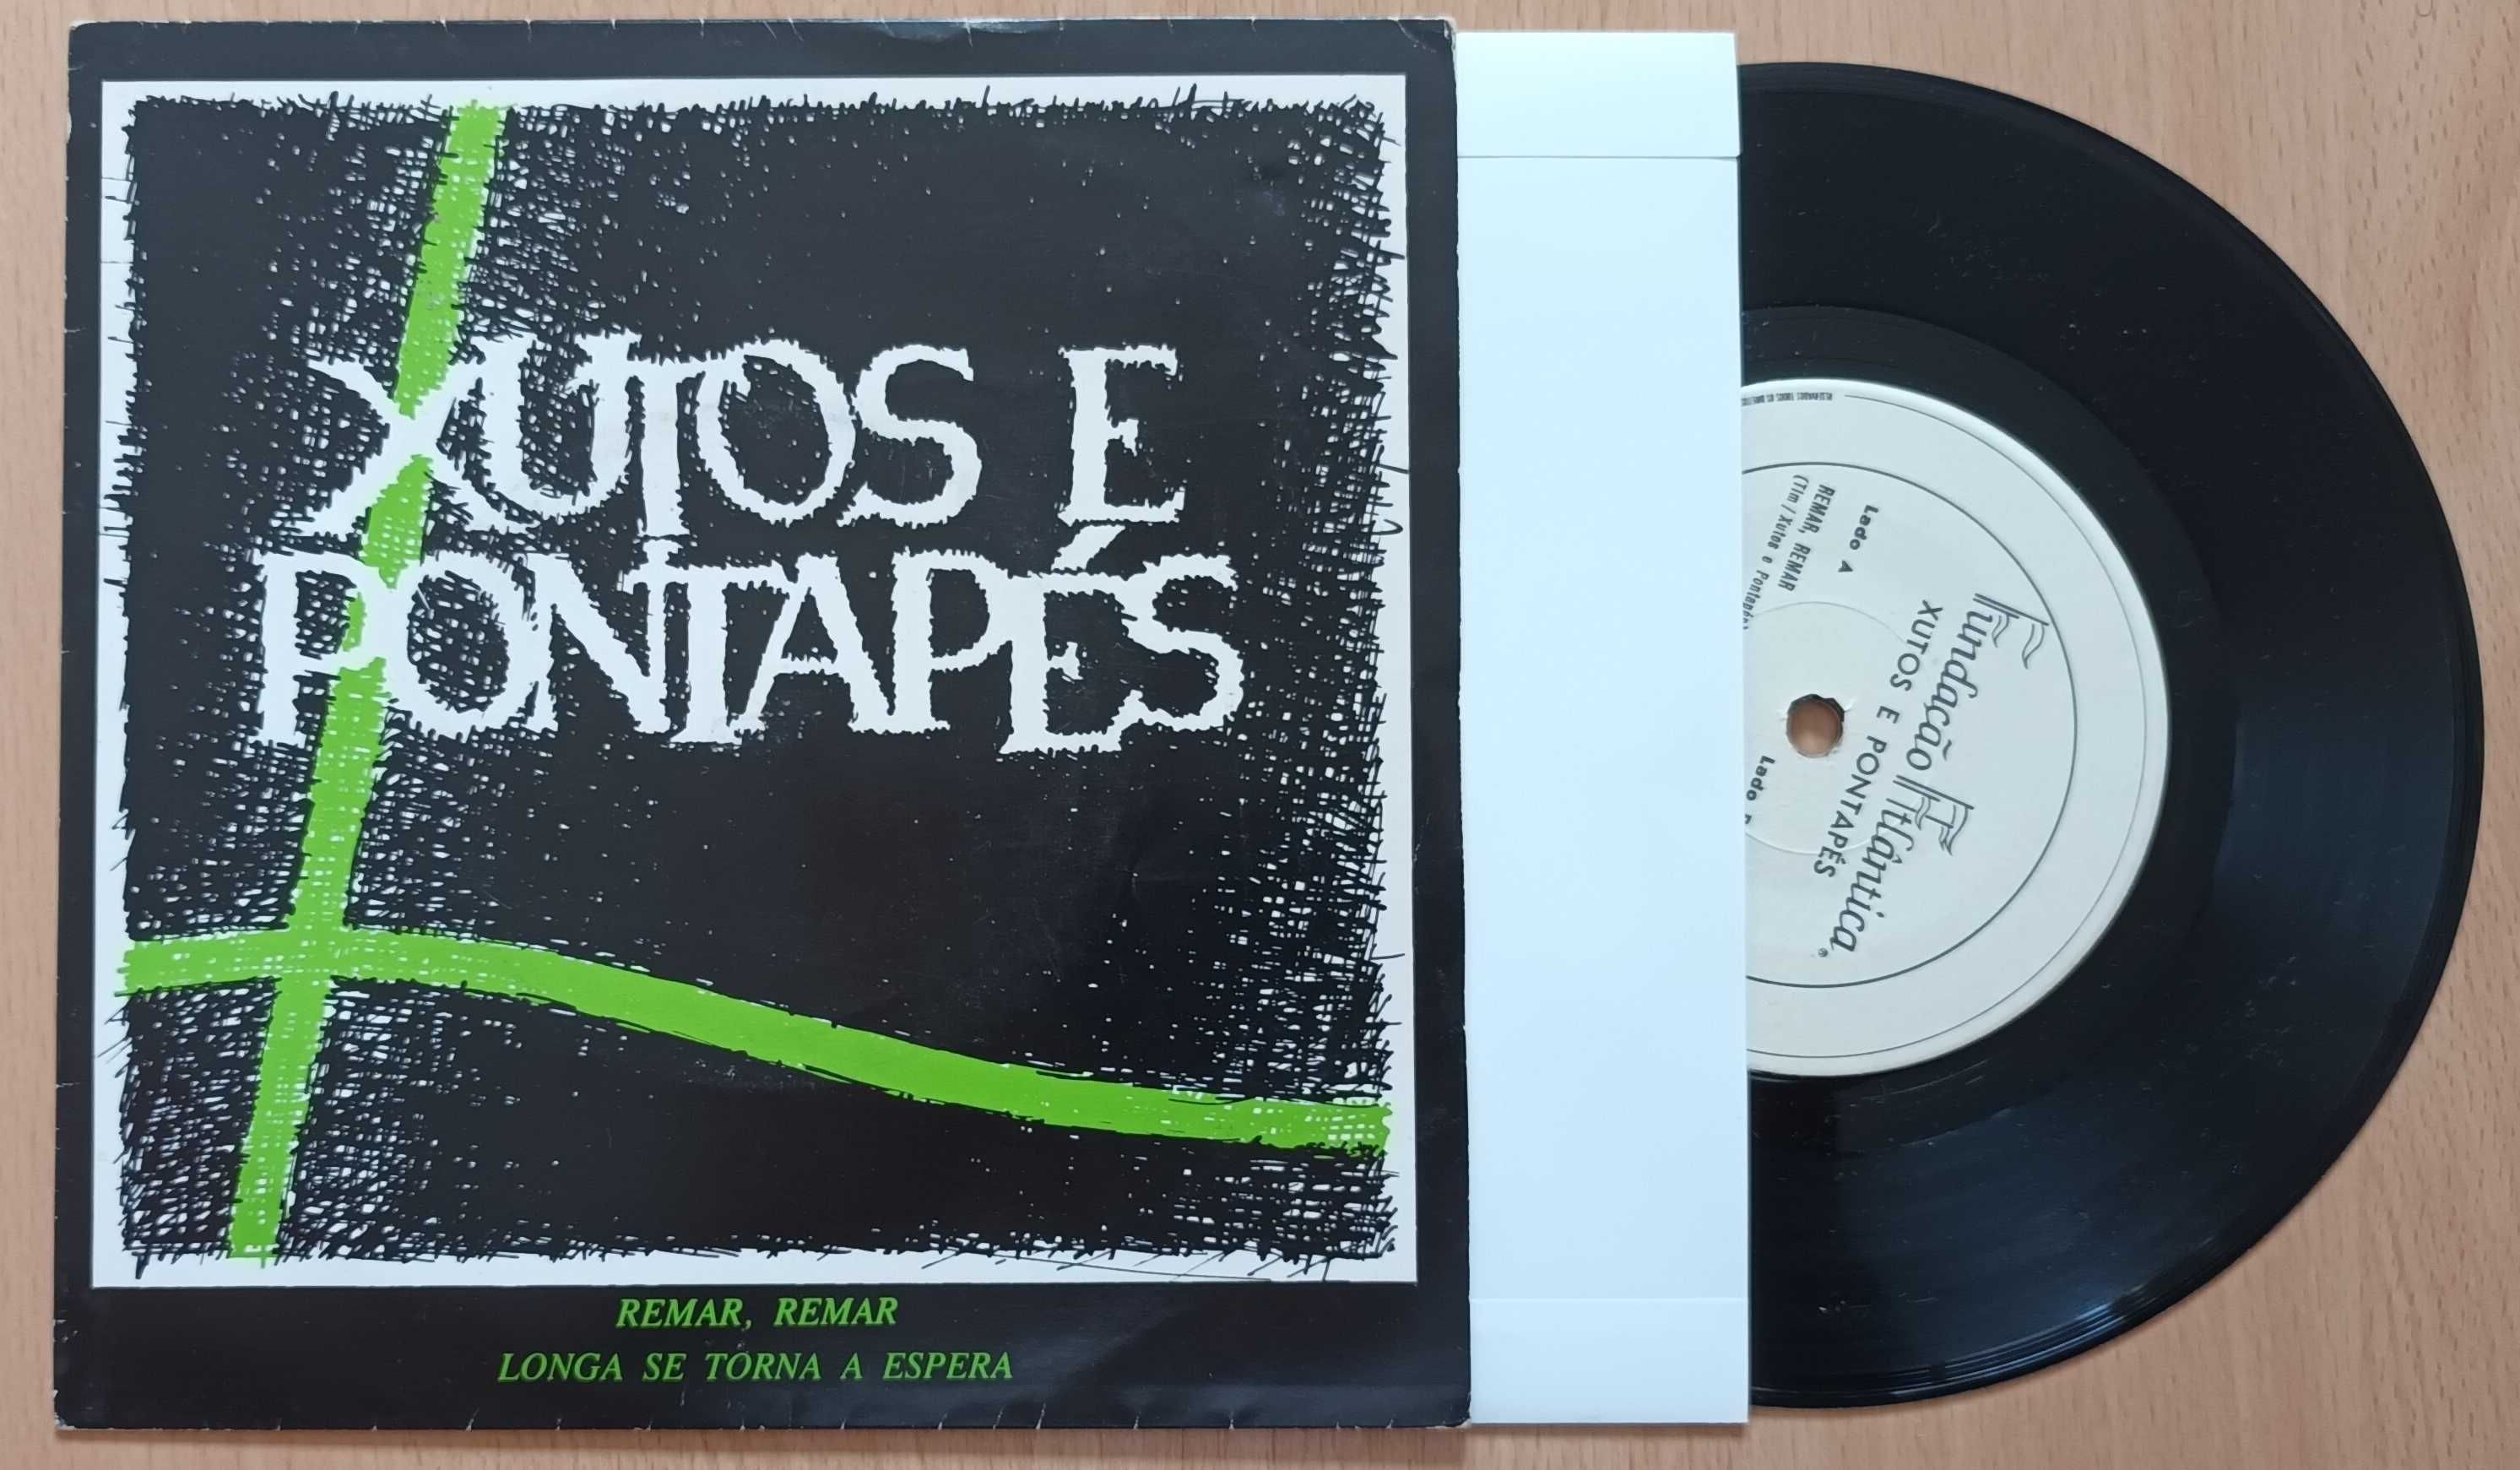 Xutos & Pontapés Remar Remar [Single] 1984 Fundação Atlântica